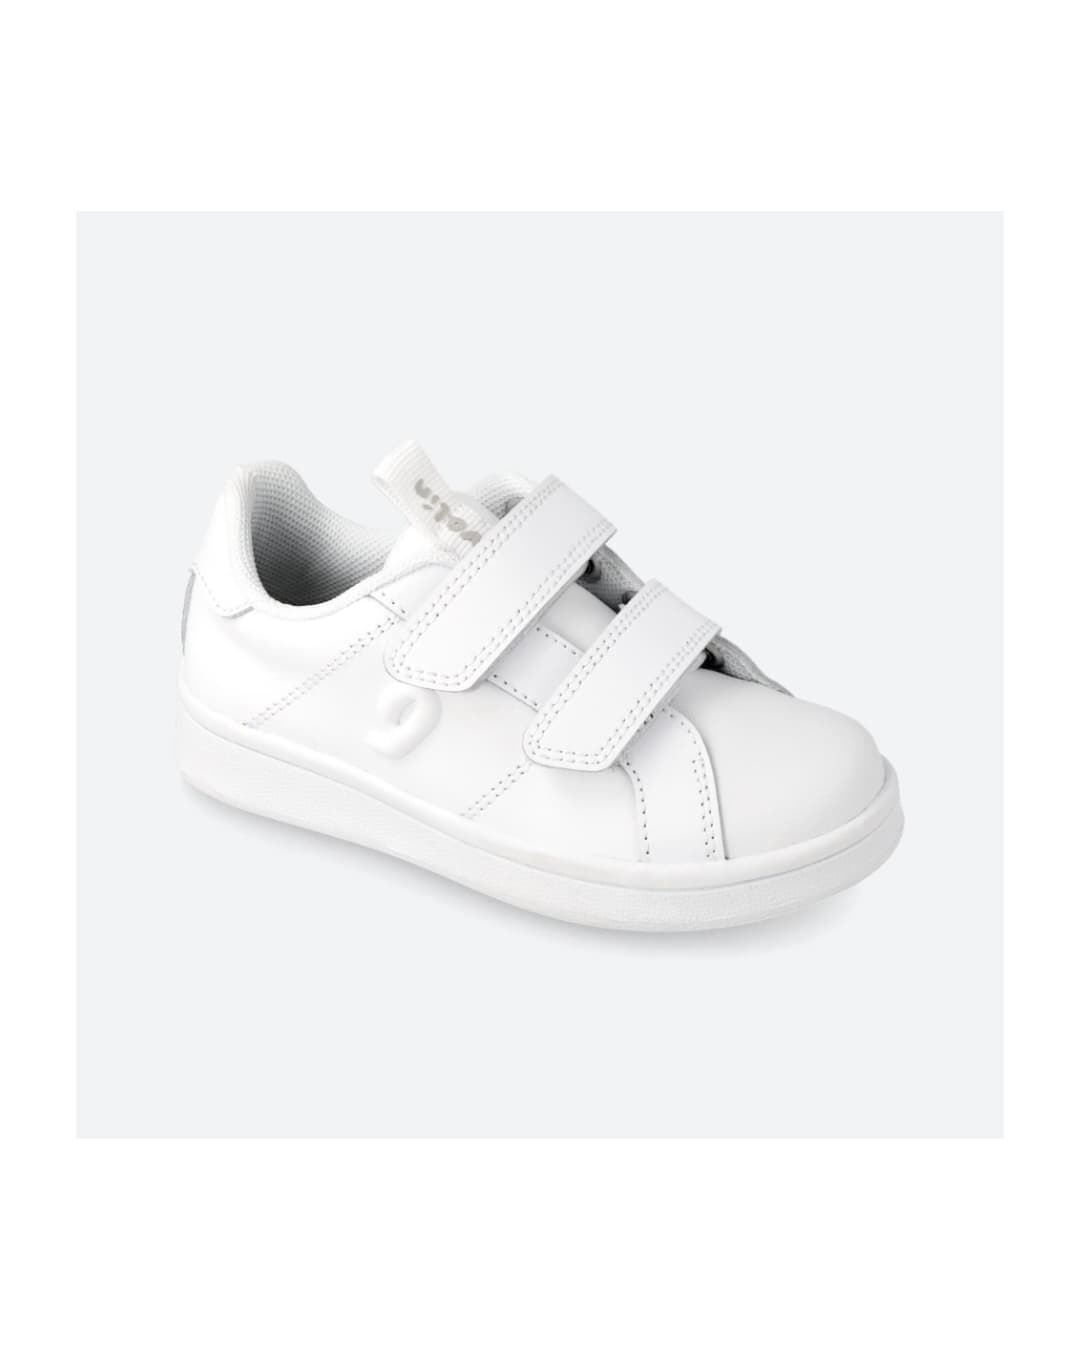 Zara Kids White Leather Stars Det Lace Up Platform Sneakers size 13.5 | eBay